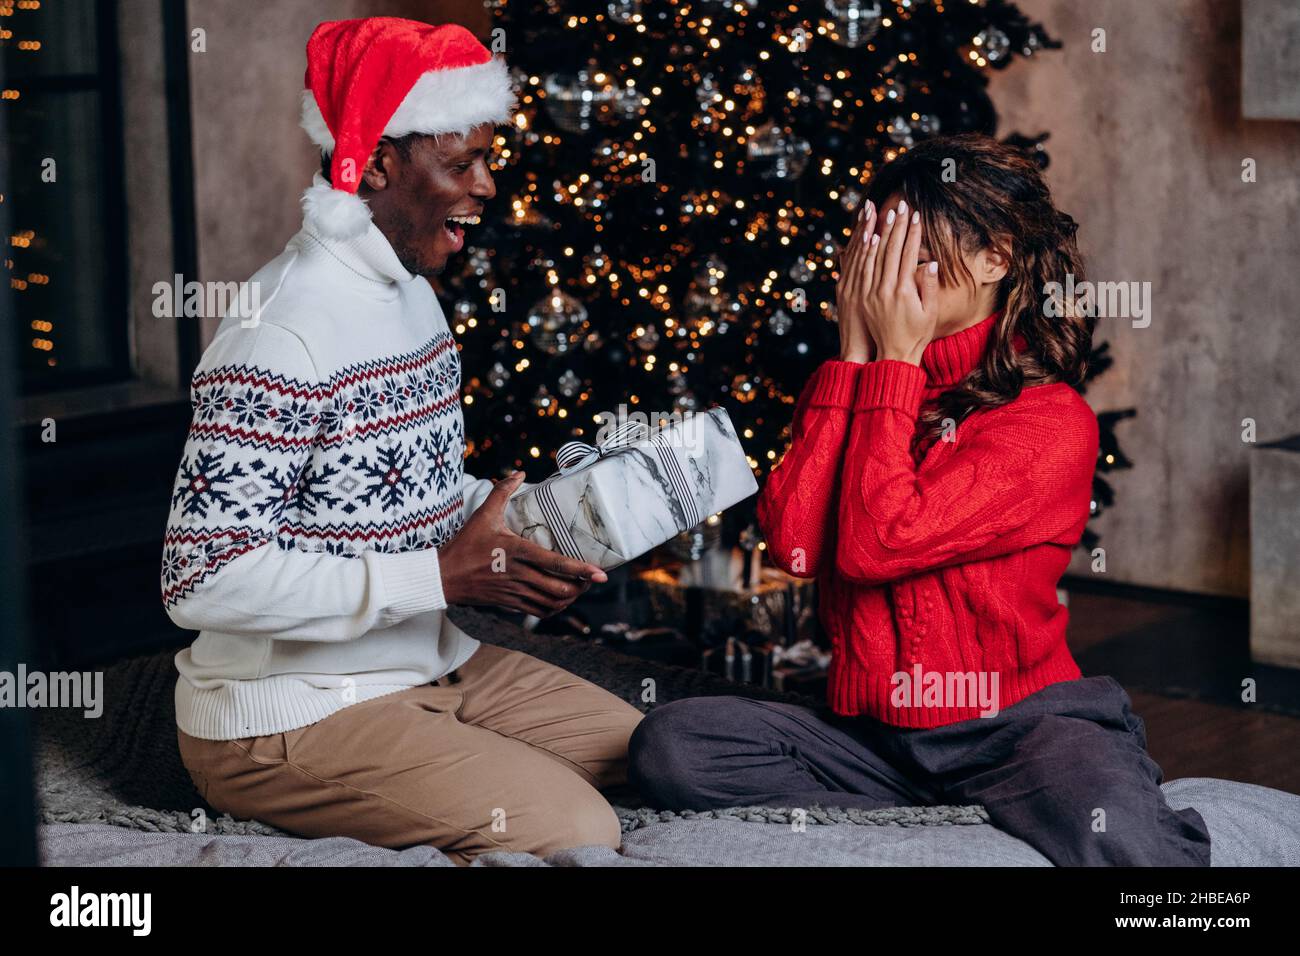 L'uomo afro-americano in un cappello rosso dà un regalo di Natale una scatola sullo sfondo di un albero di Capodanno, una coppia in amore celebra a casa, una donna in un maglione rosso copre il suo volto con le mani ed è in attesa di una sorpresa Foto Stock